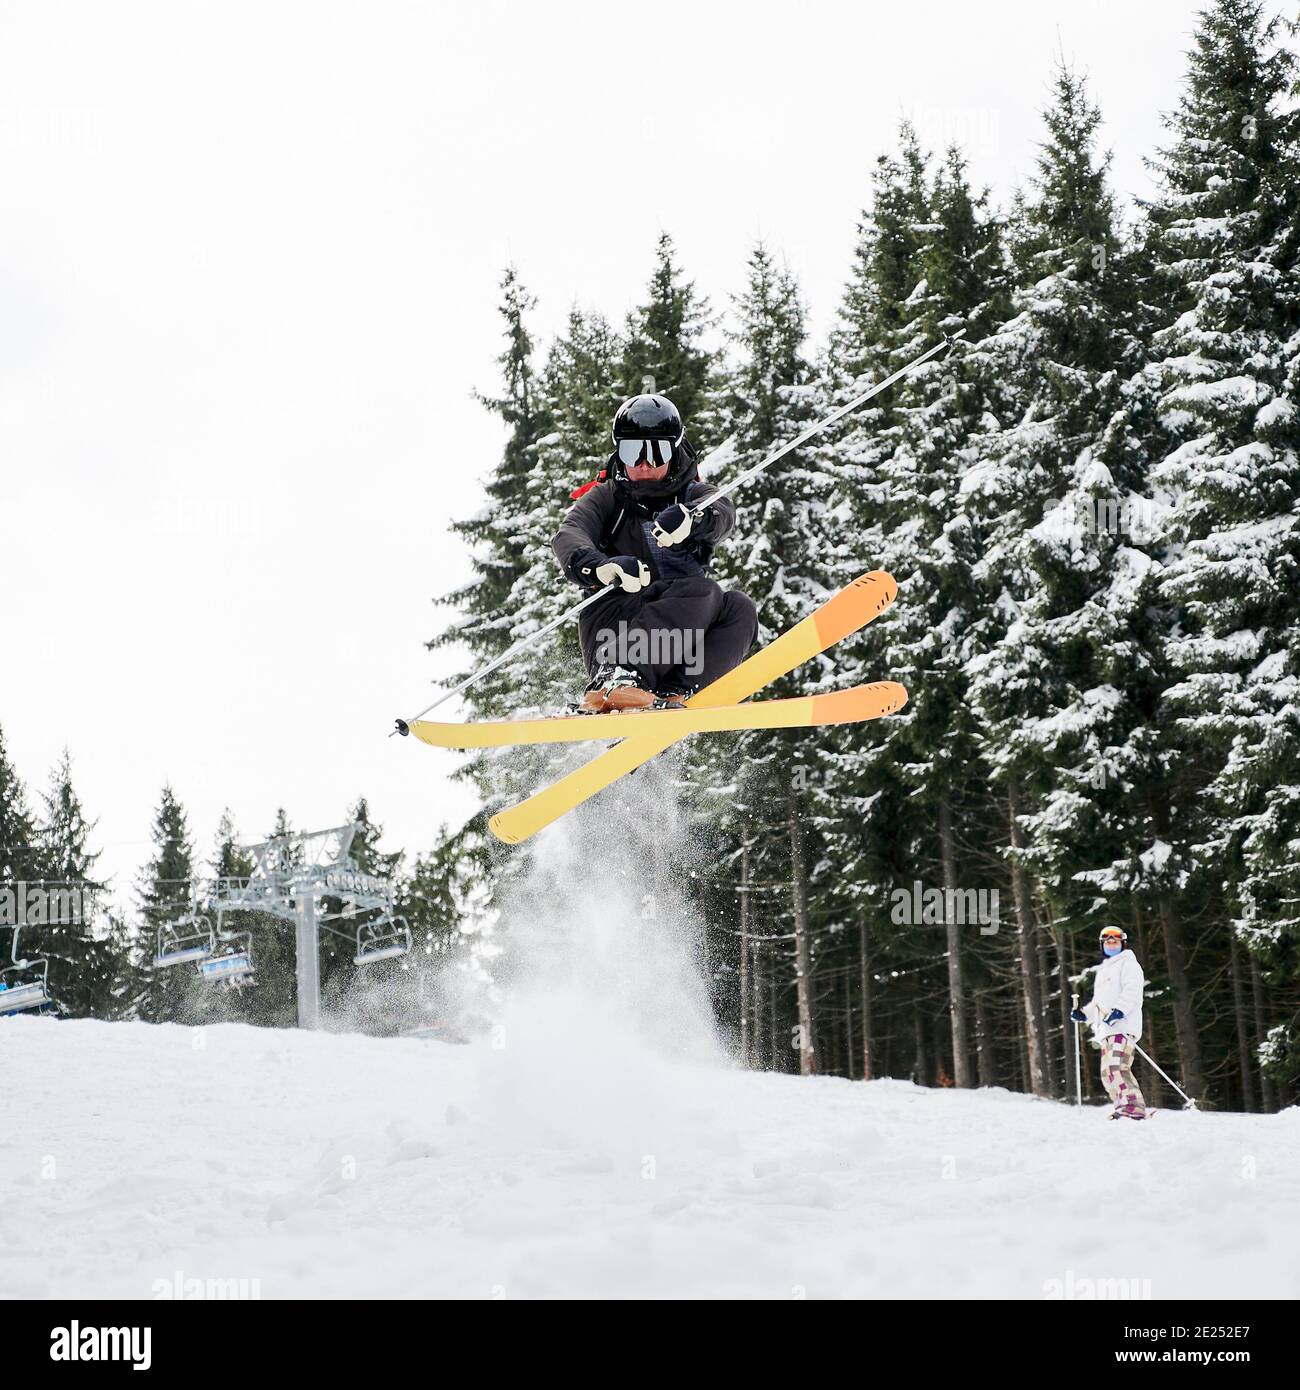 Esquiador masculino en traje de esquí y casco de esquí en nieve fresca en polvo con pinos nevados en el fondo. Hombre freerider en gafas de esquí sosteniendo postes de esquí y haciendo saltar mientras se desliza por pistas cubiertas de nieve Foto de stock